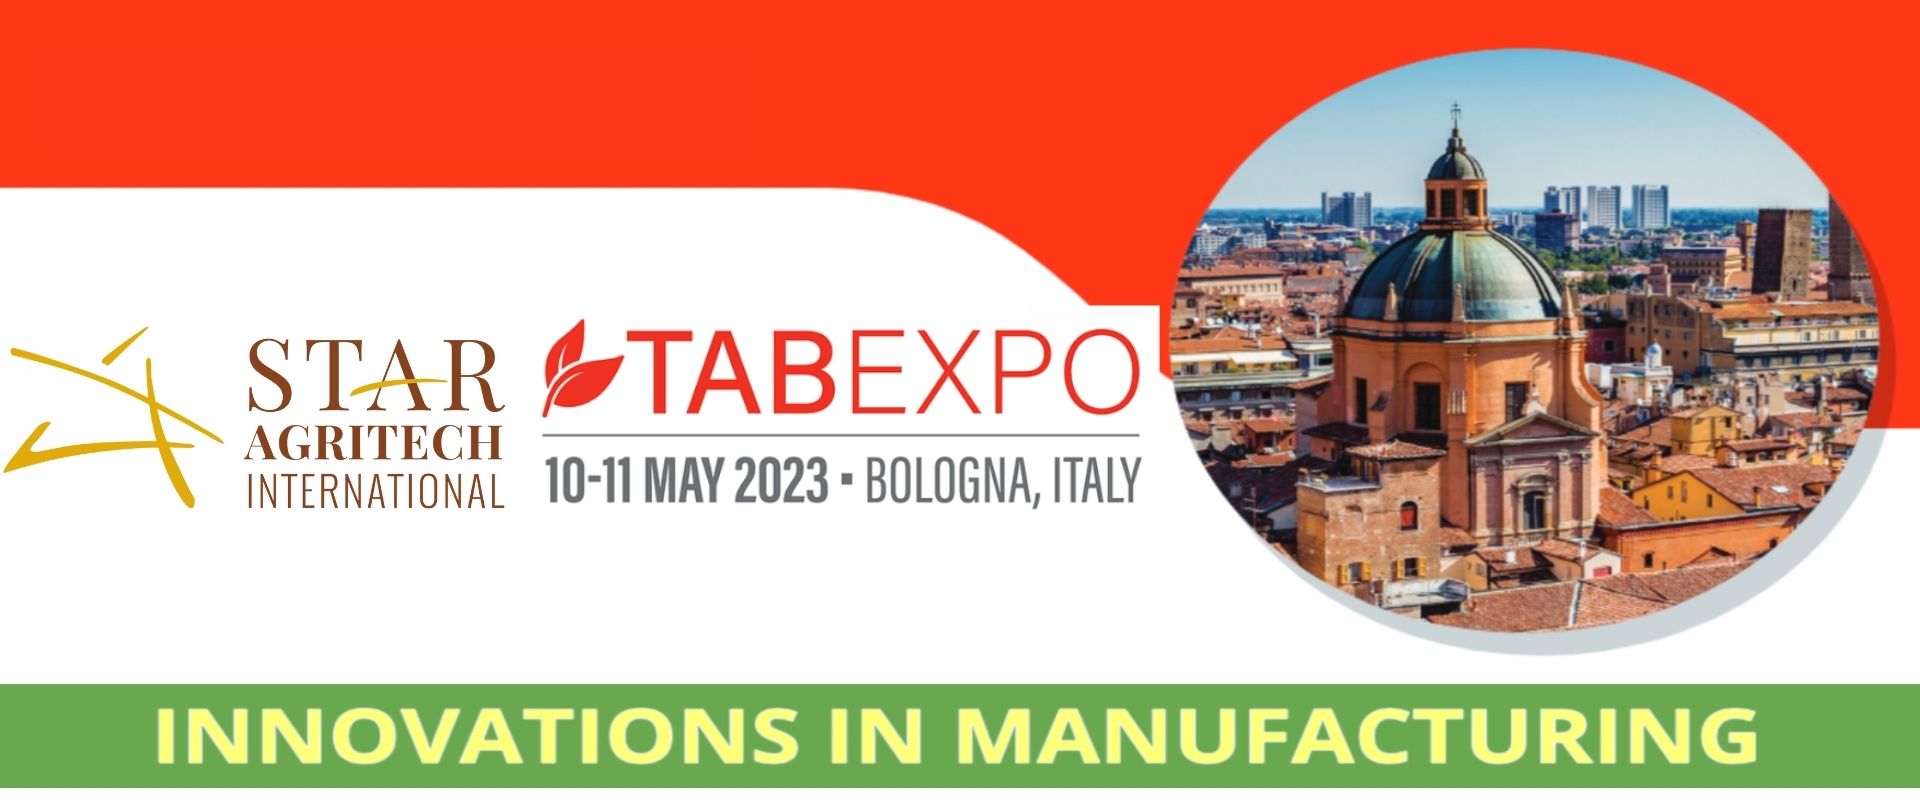 TABEXPO May 10-11, 2023 Bologna, Italy